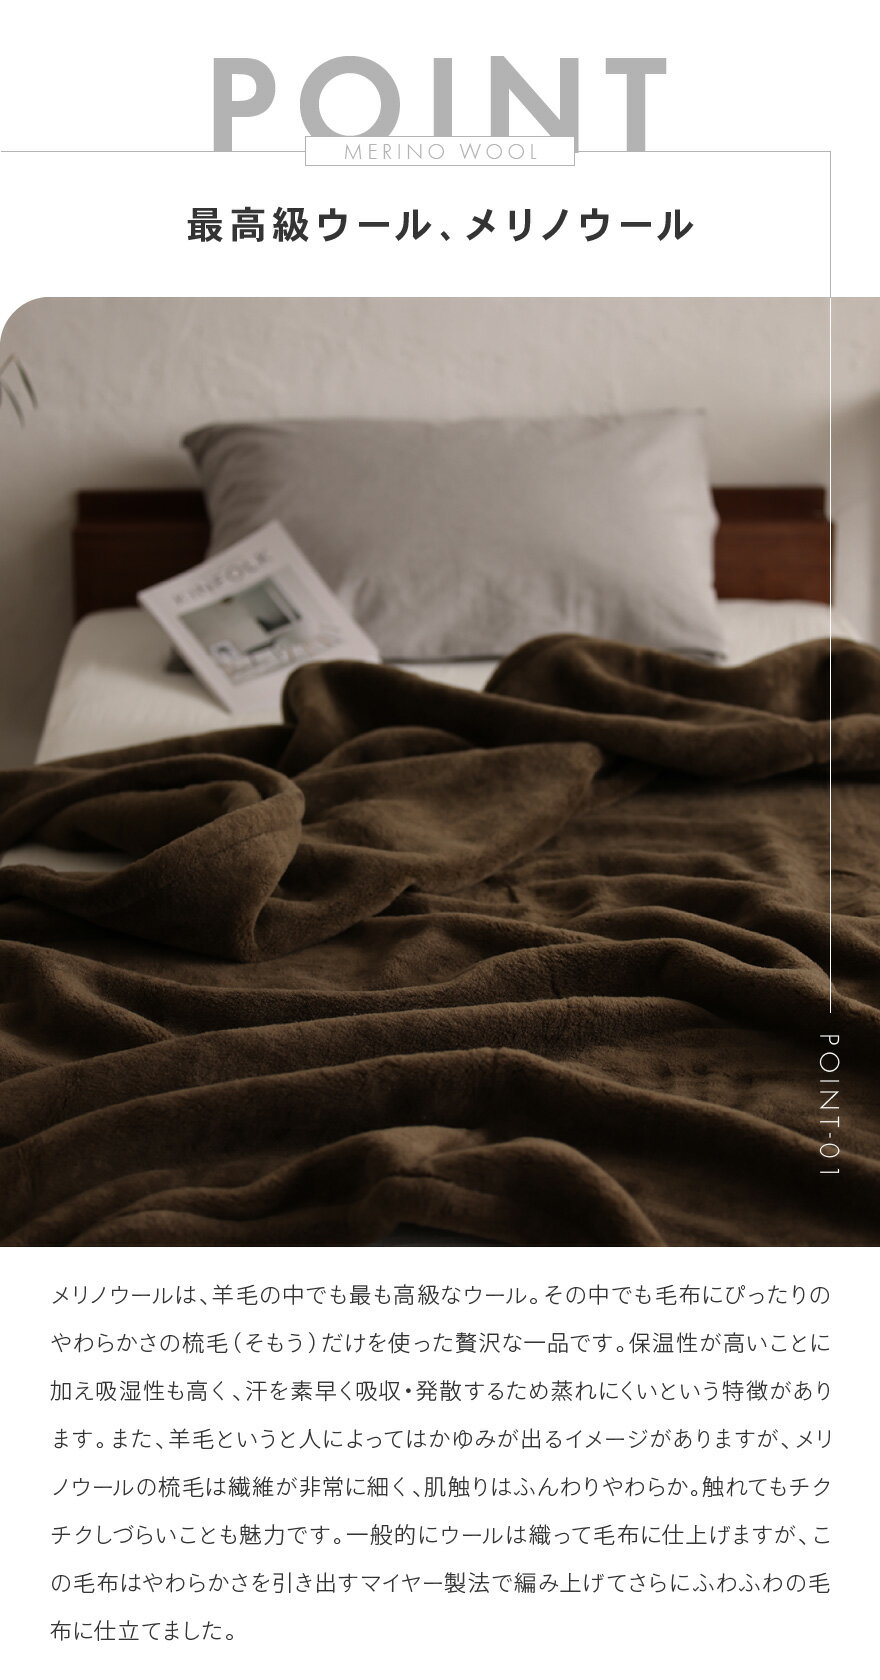 日本製 ウール毛布 メリノウール ベーシック シングルサイズ 140×200cm ナチュラルホワイト ふんわり 防臭 保温 通気性 暖かい 発熱 秋冬向け(FQ040-SJ)